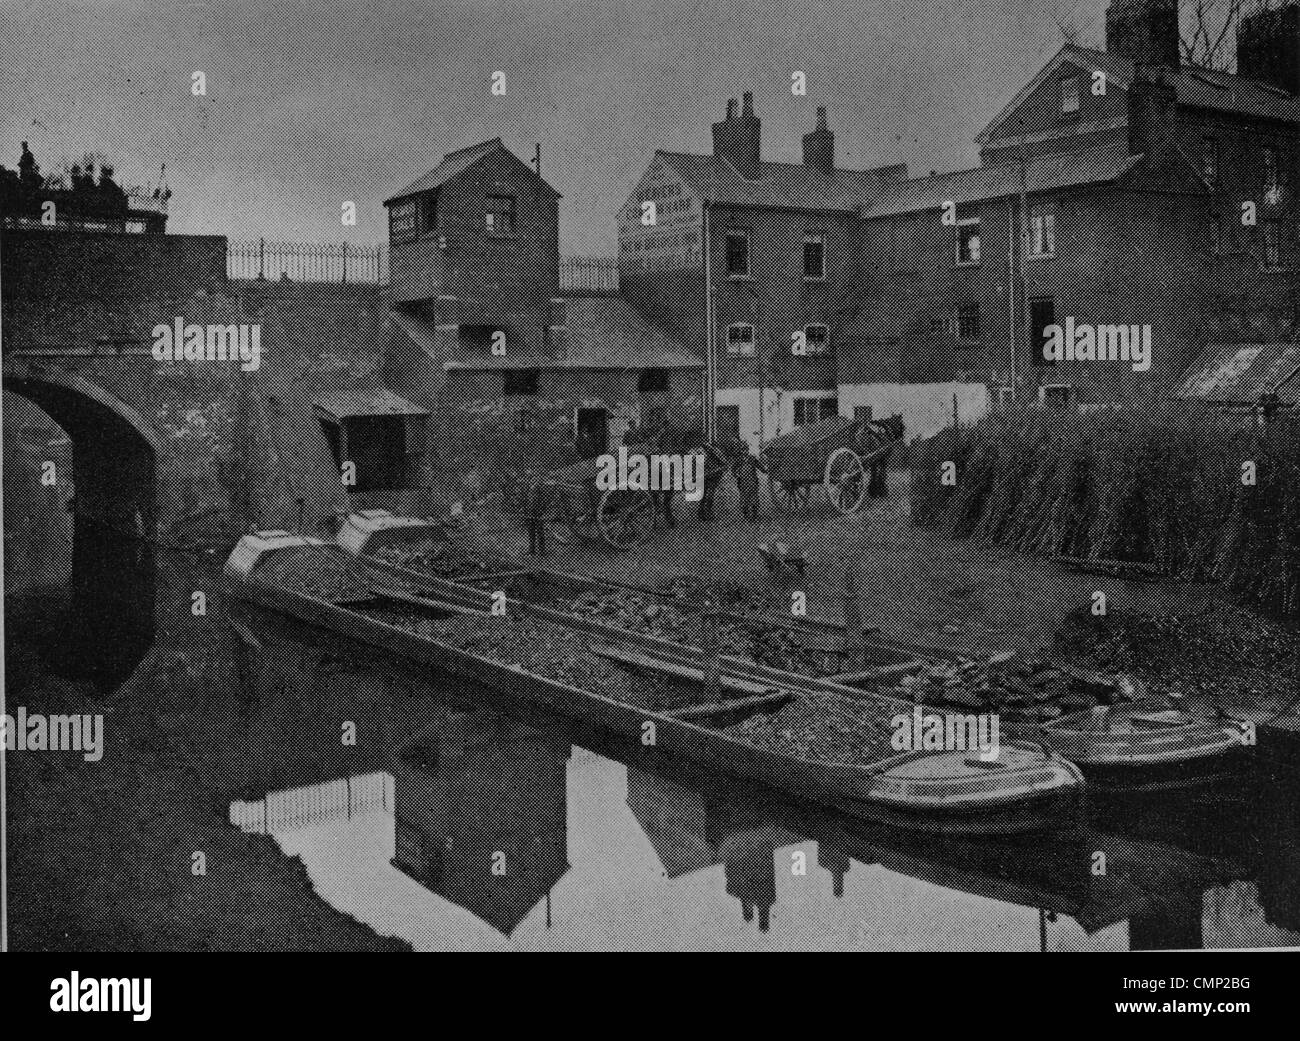 Tessitore carbone Wharf, Newbridge, circa 1910. Una copia di una fotografia scattata intorno al 1910, del carbone Wharf a Newbridge di proprietà di Foto Stock